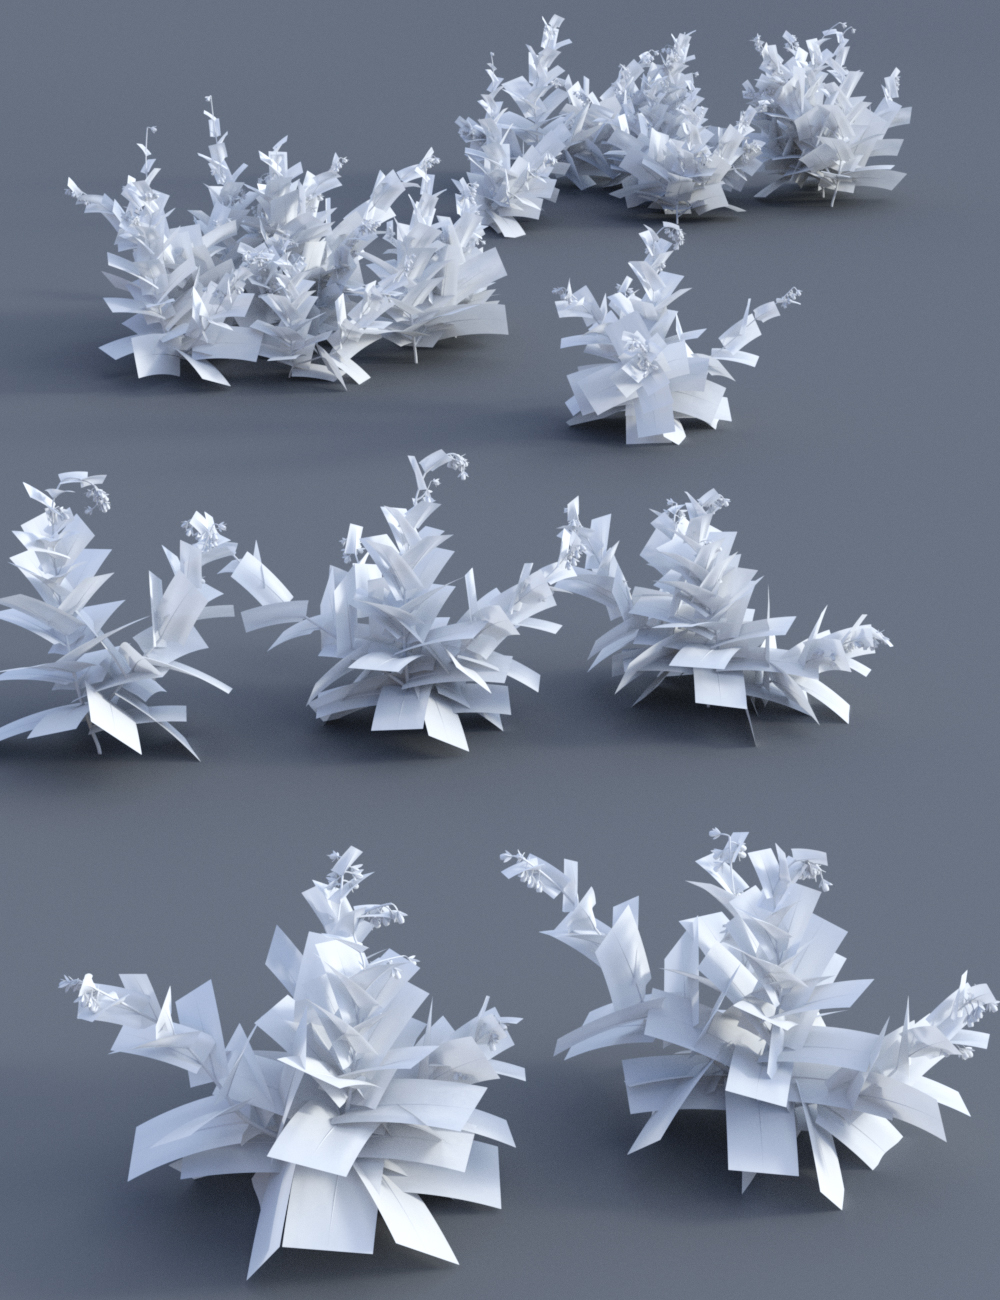 Wild Flower Plants vol 3 by: MartinJFrost, 3D Models by Daz 3D